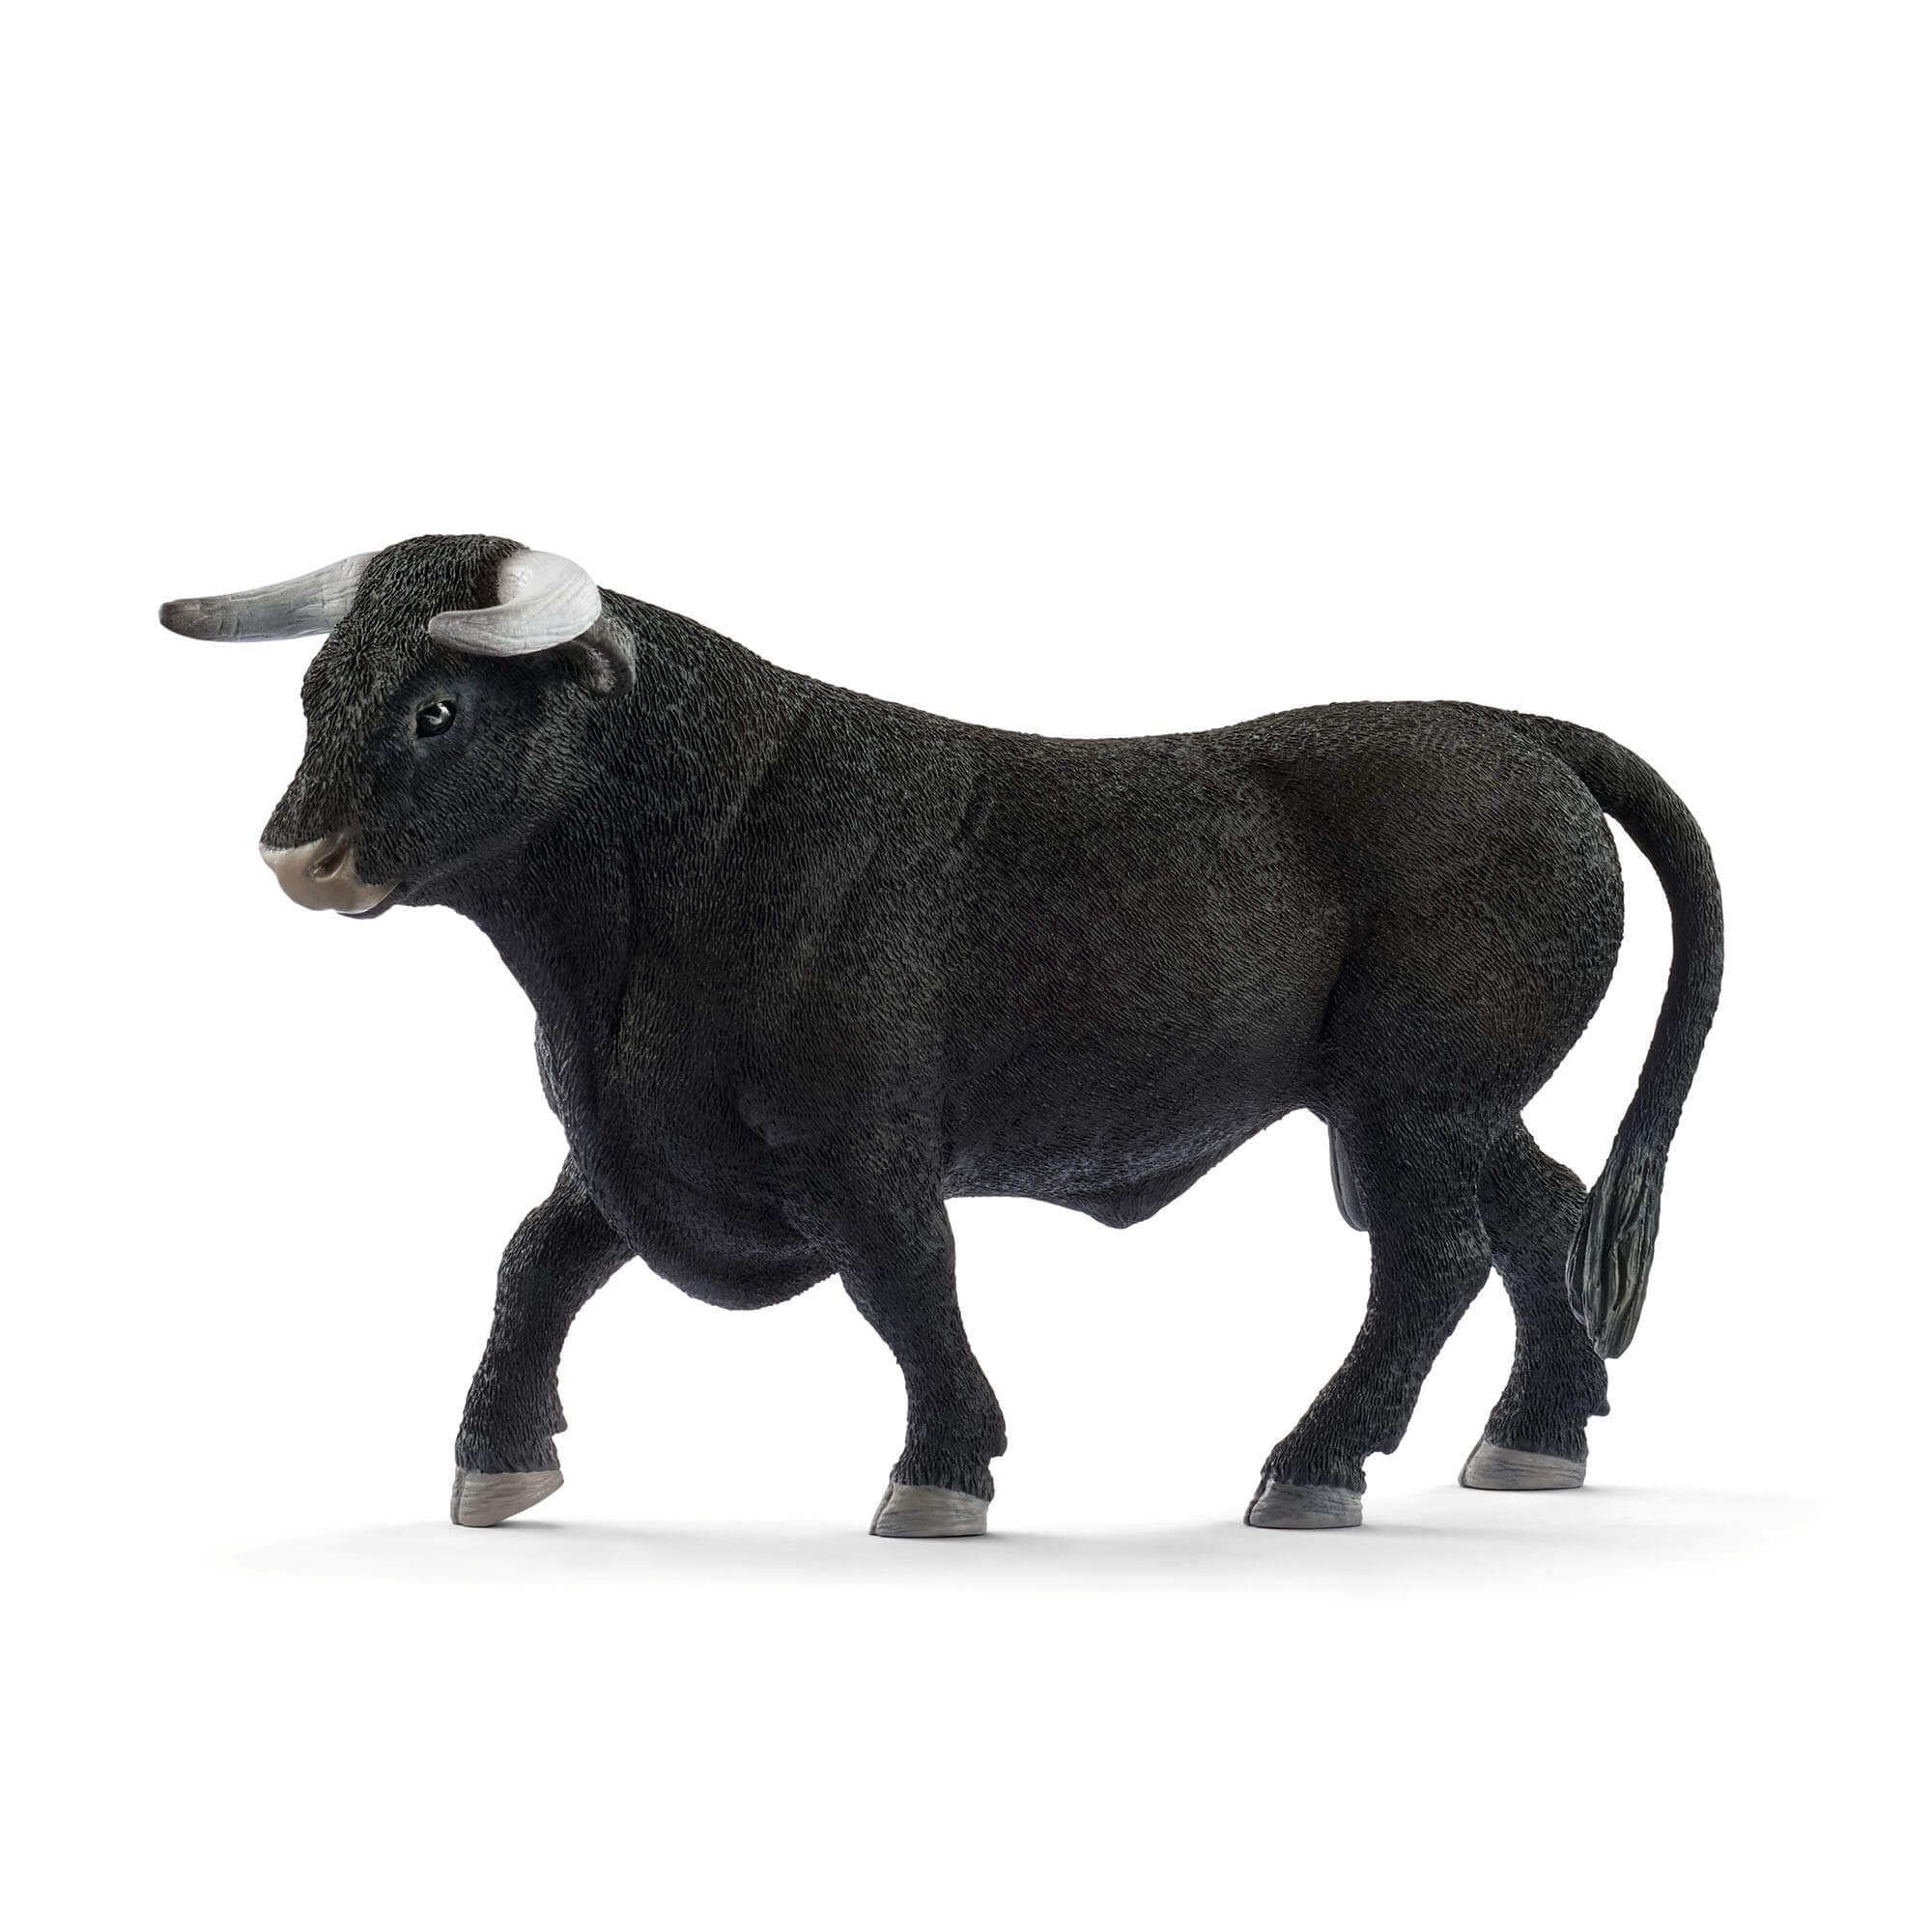 Schleich Farm World Black Bull Animal Figure